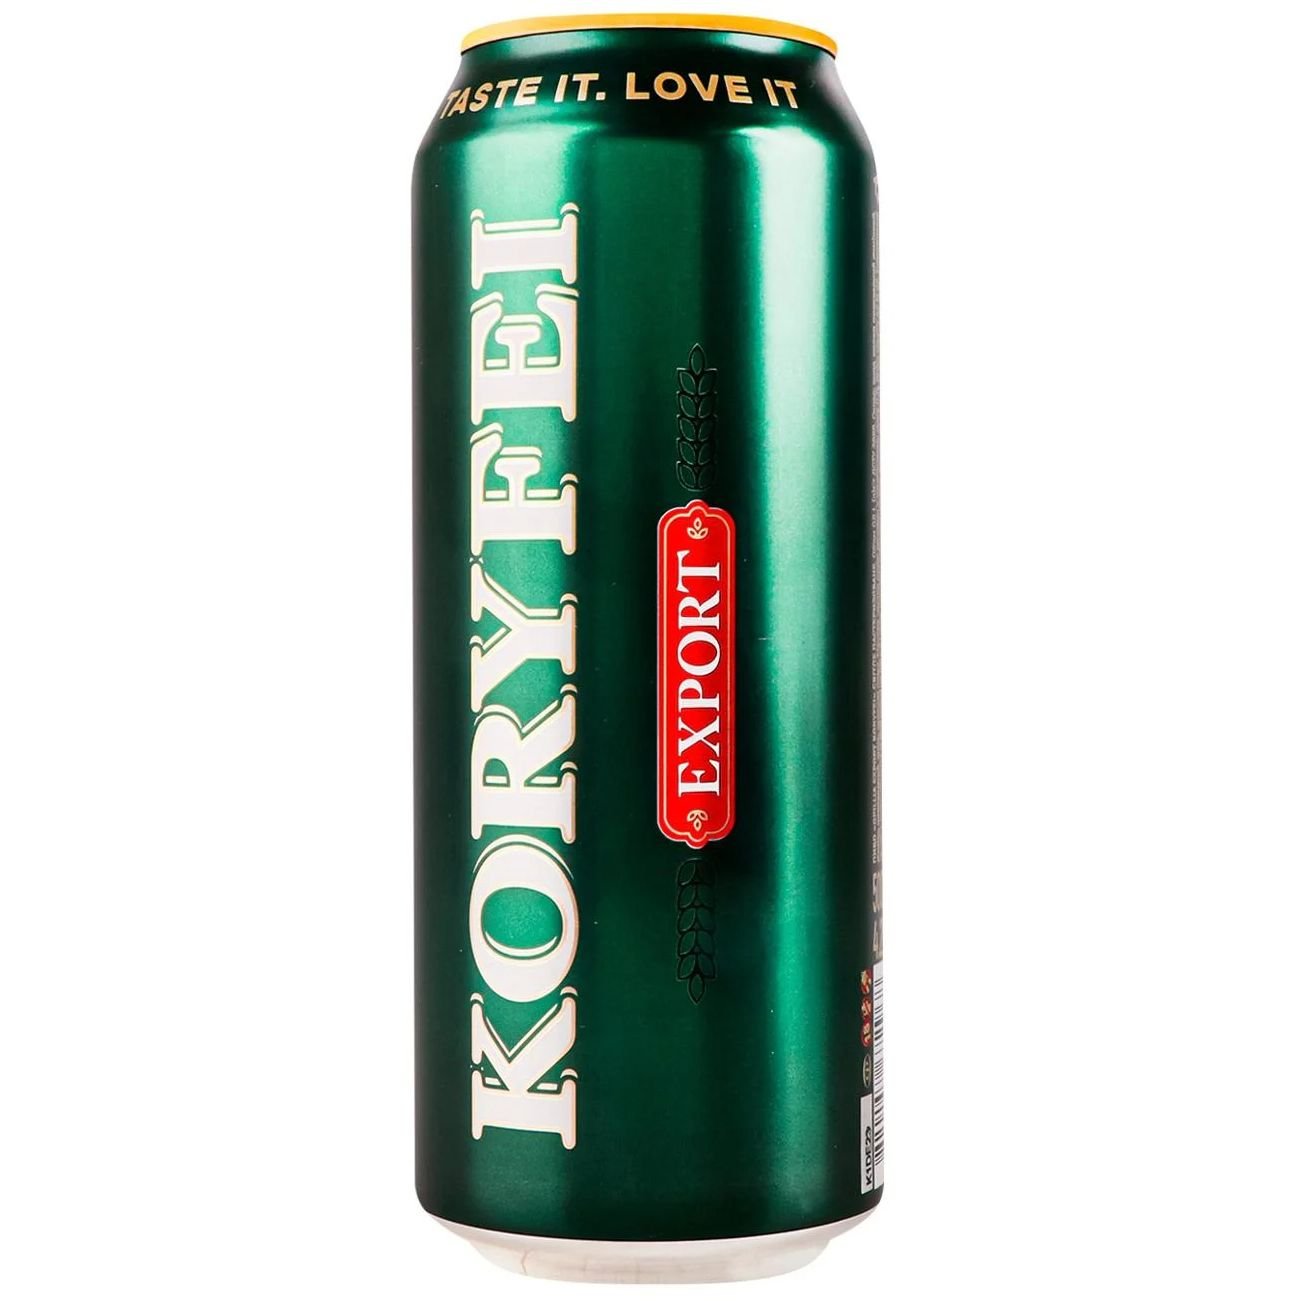 Пиво Опілля Koryfei Export, светлое, фильтрованное, 4.2% 0.5 л ж/б - фото 2